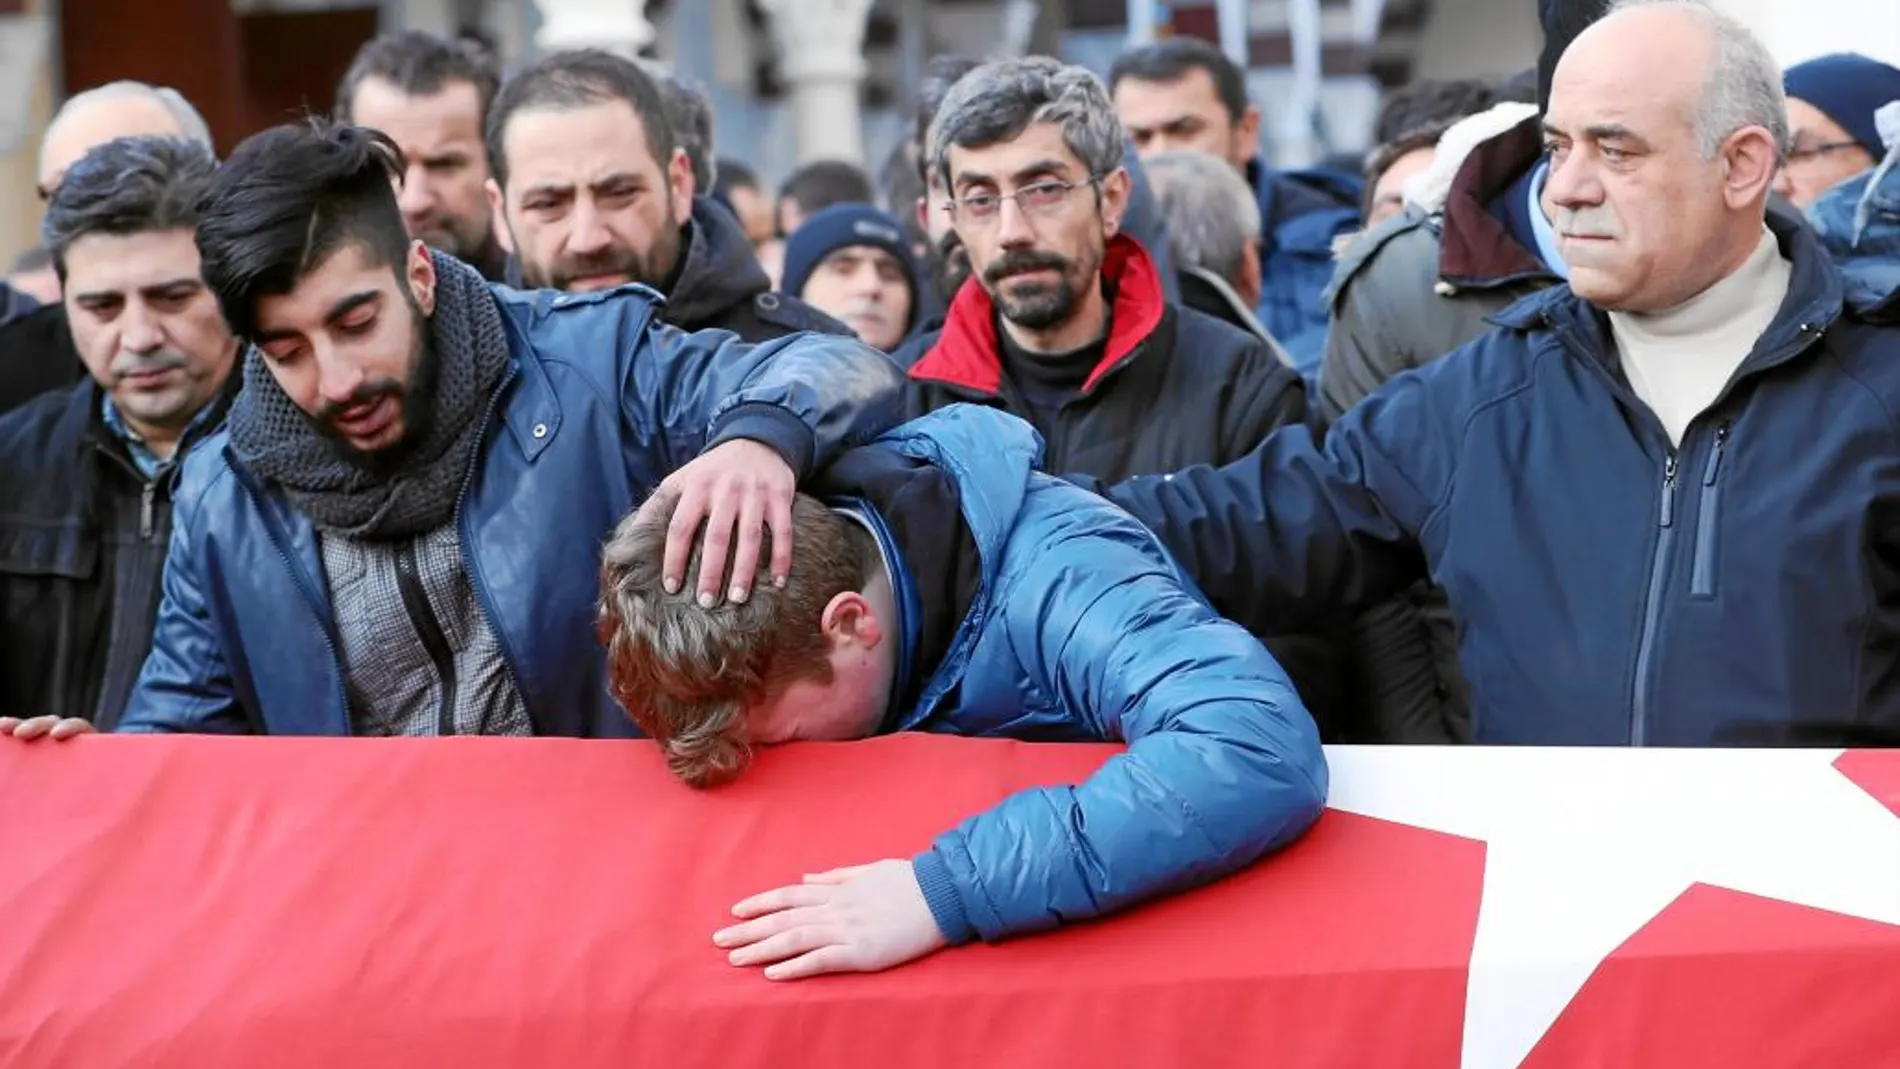 Los funerales por las víctimas de la sala Reina de Estambul congregaron a miles de turcos, que quisieron rendirles homenaje